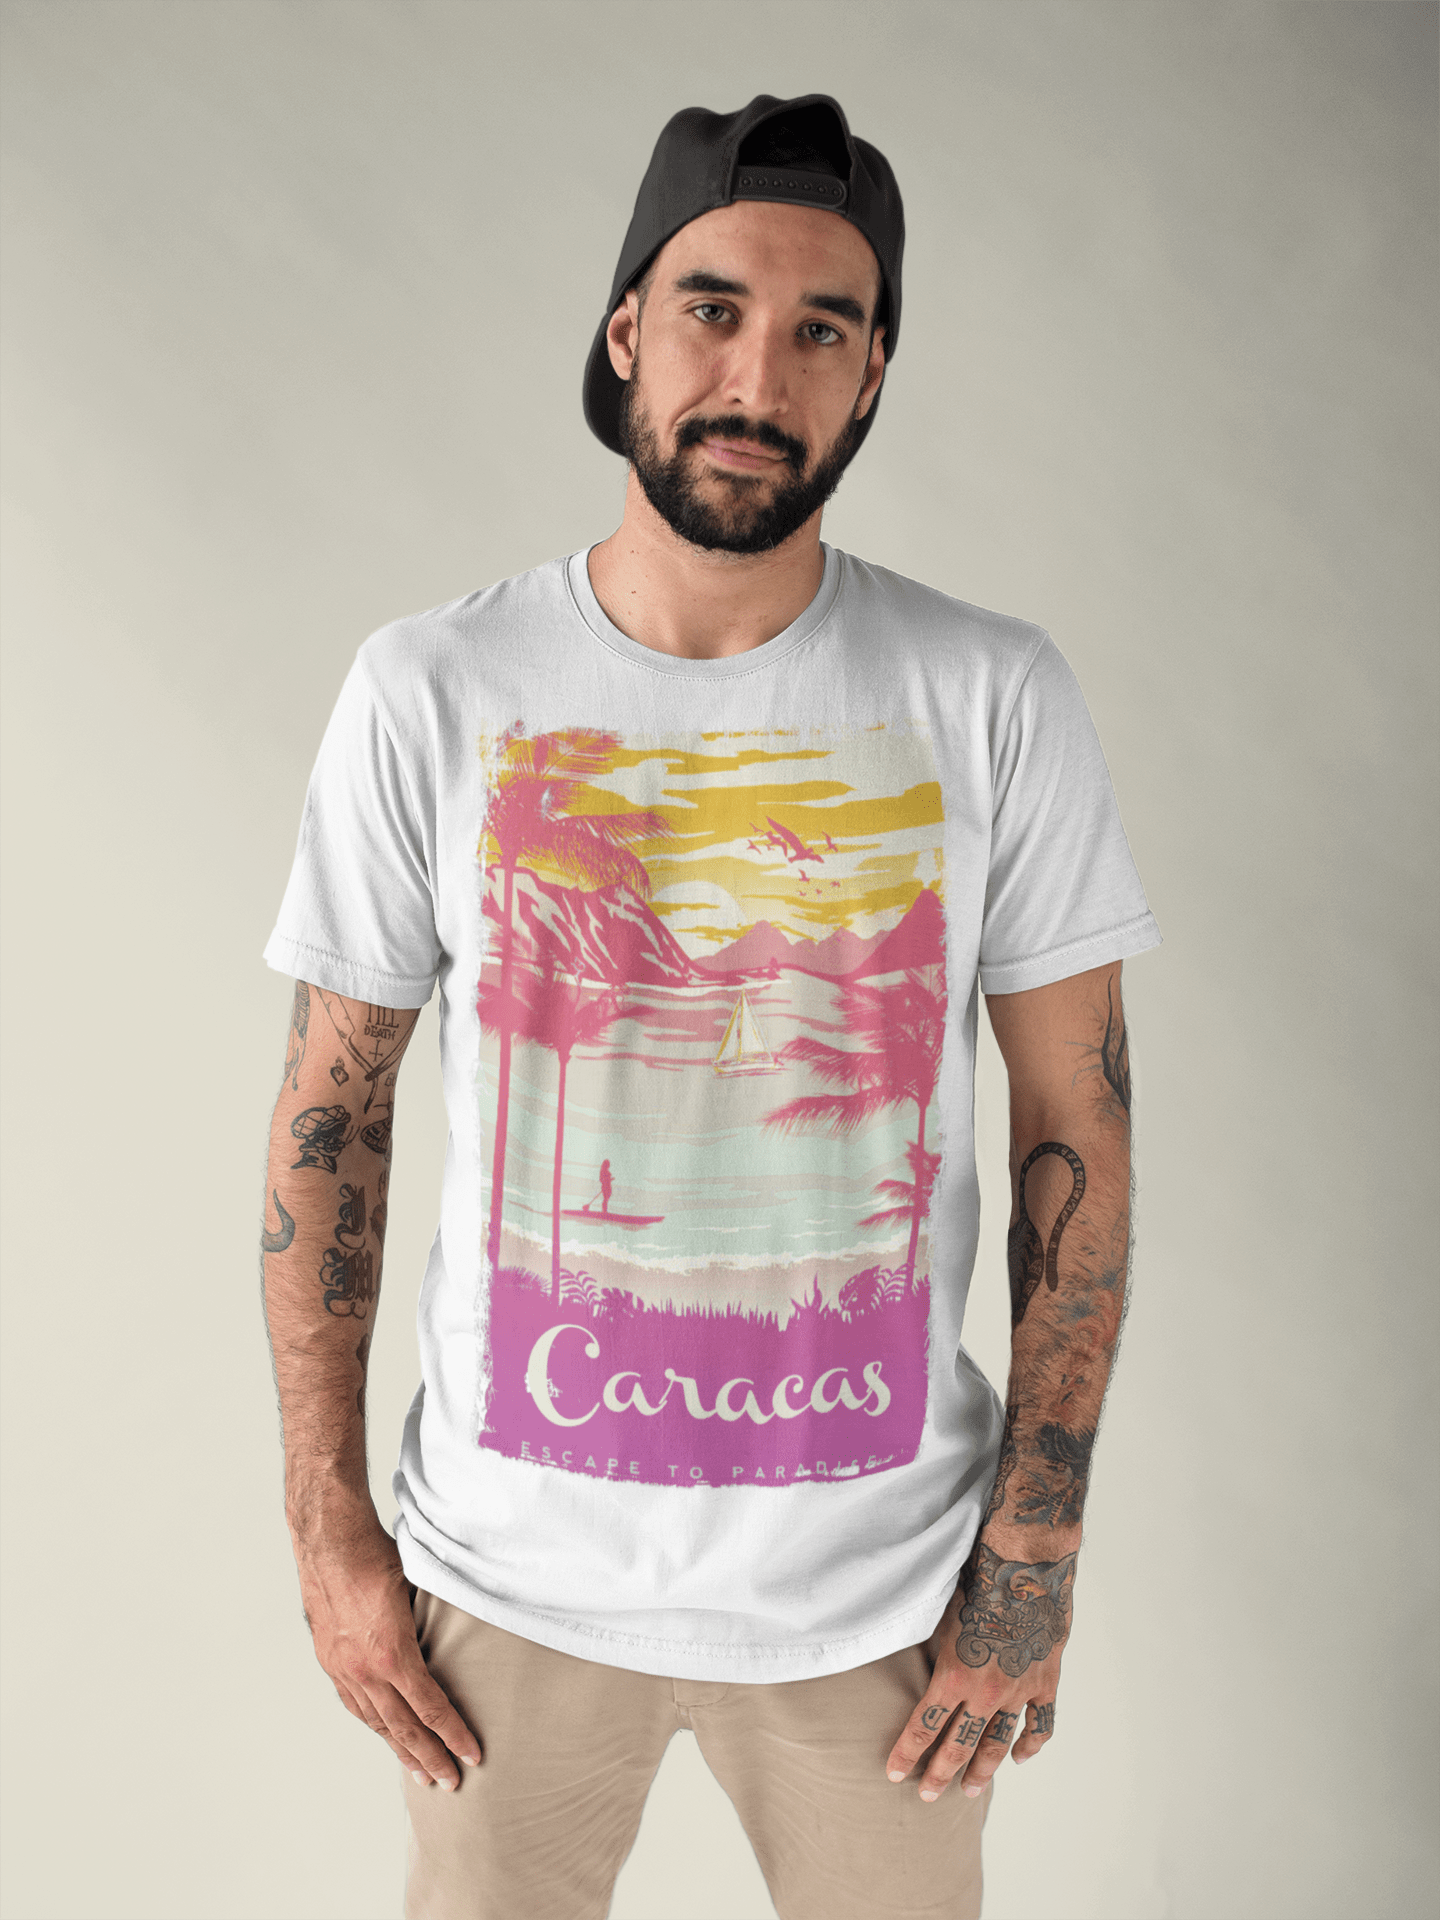 Caracas, Escape to paradise, White, Men's Short Sleeve Round Neck T-shirt 00281